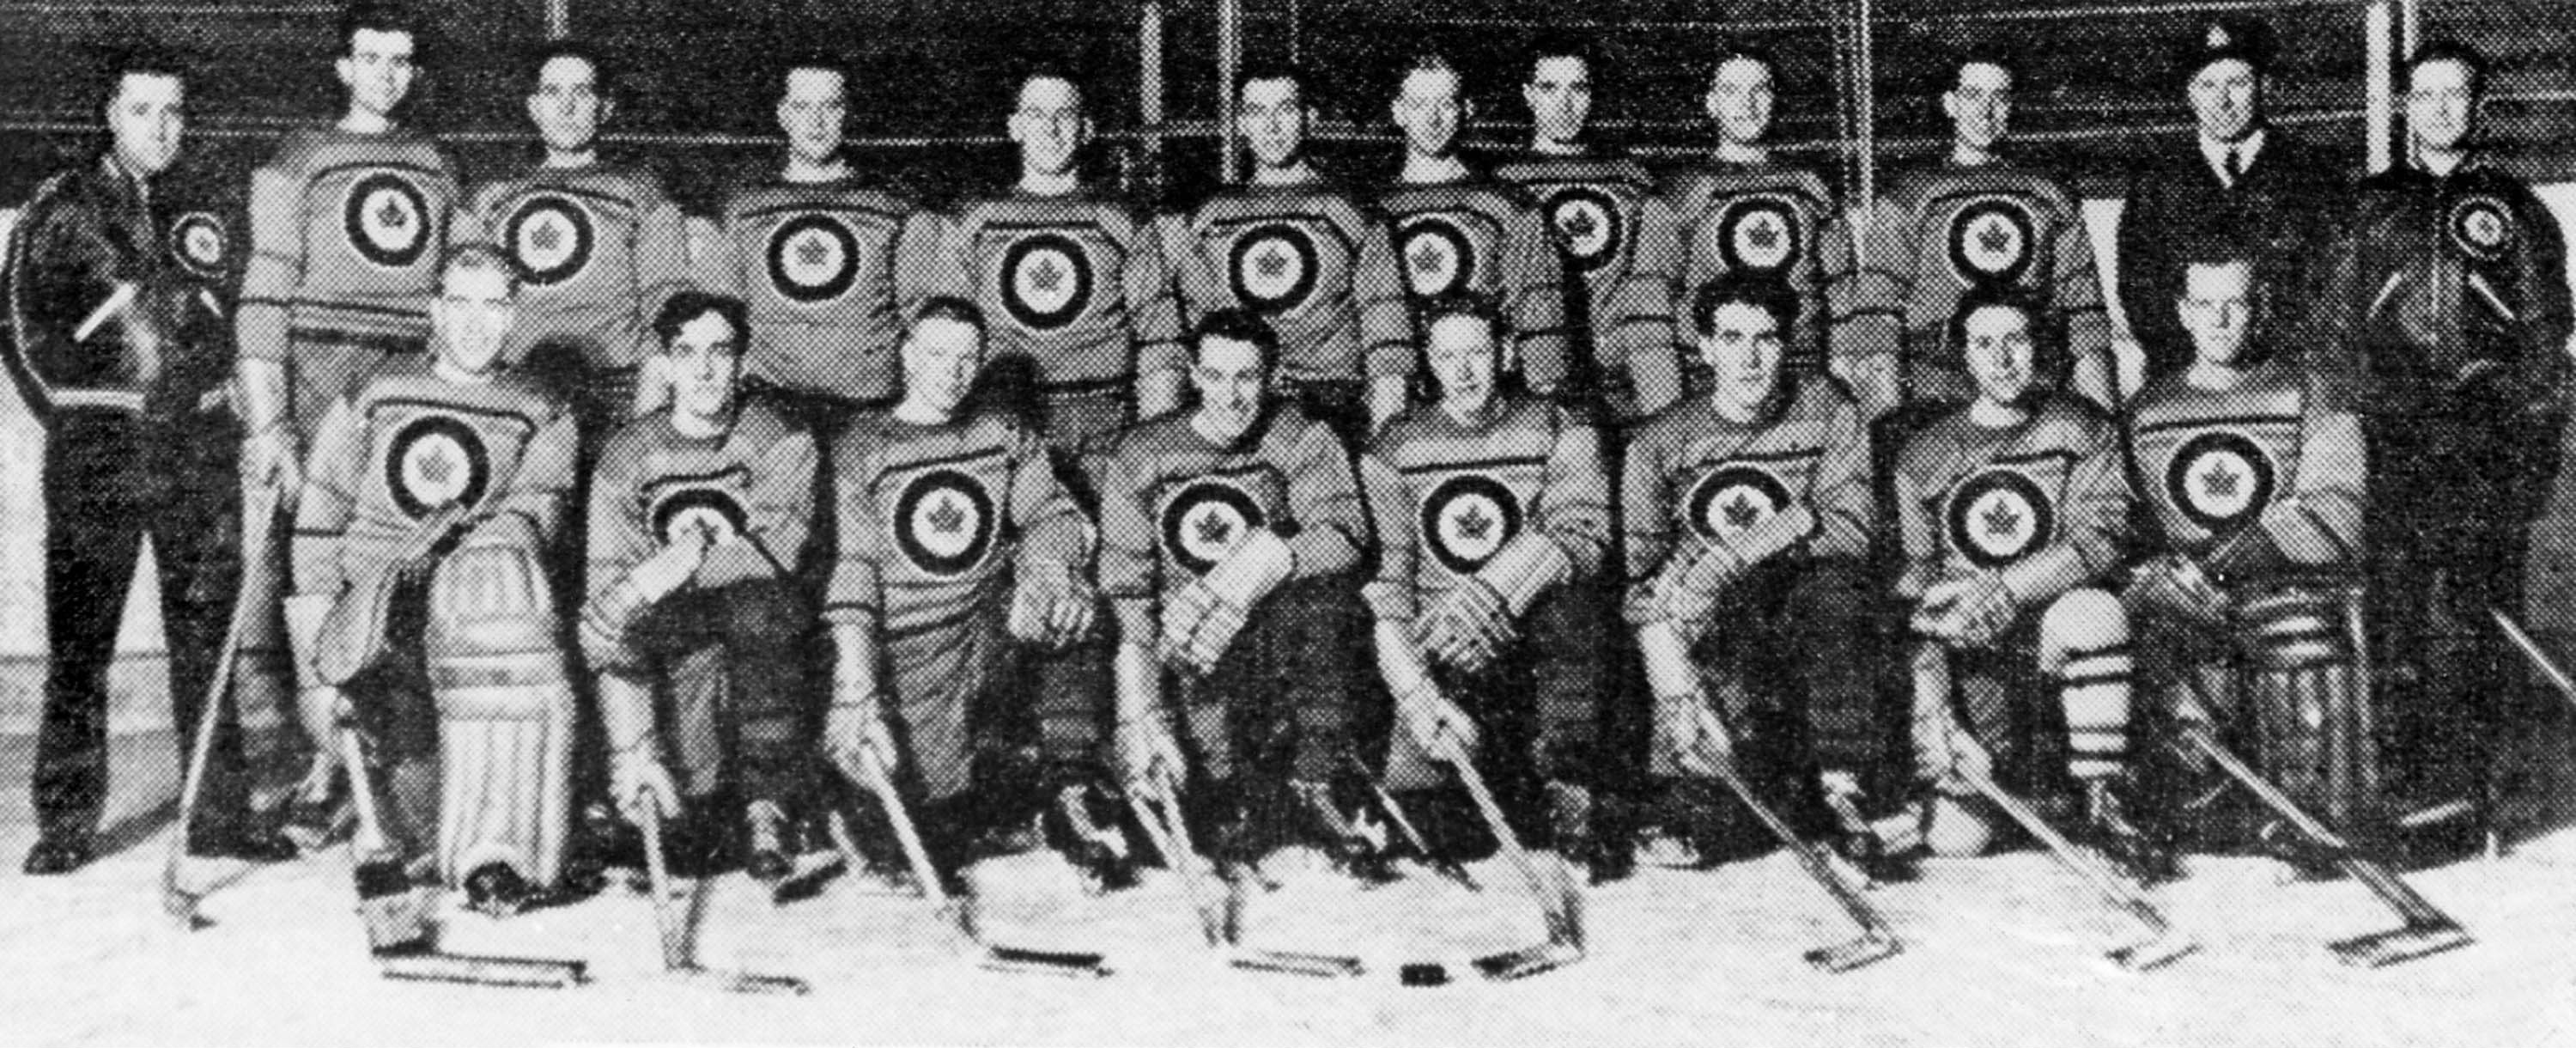 L'équipe canadienne de hockey sur glace des Jeux d'hiver de St Moritz en 1948 , représentée par les Flyers de l'ARC, est en chemin vers la médaille d'or.  (CP Photo/COC)